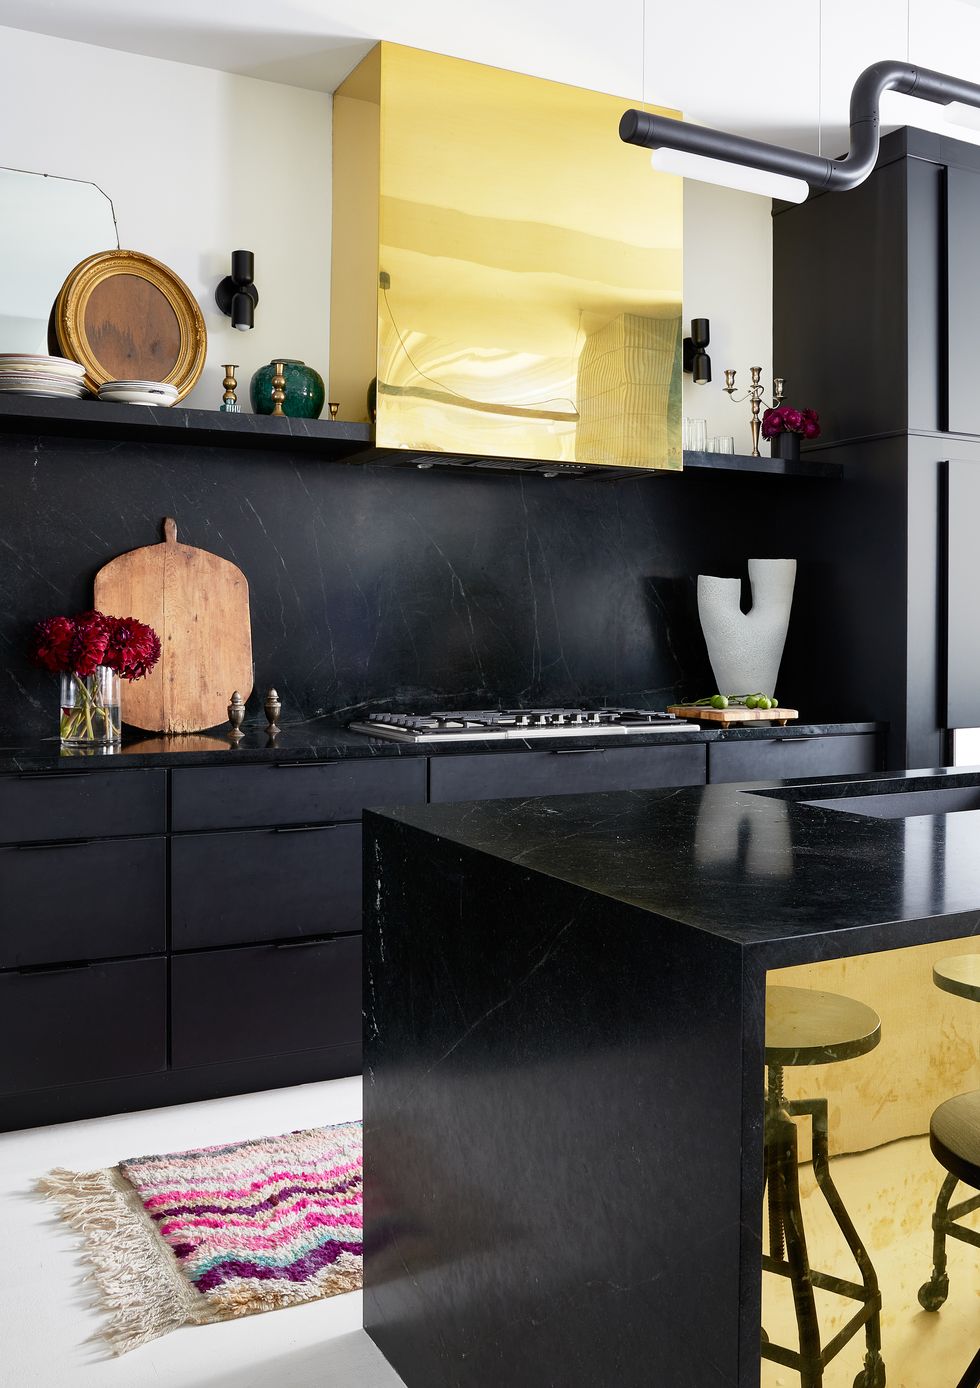 Interior de cocina moderna con nevera. nevera negra retro.